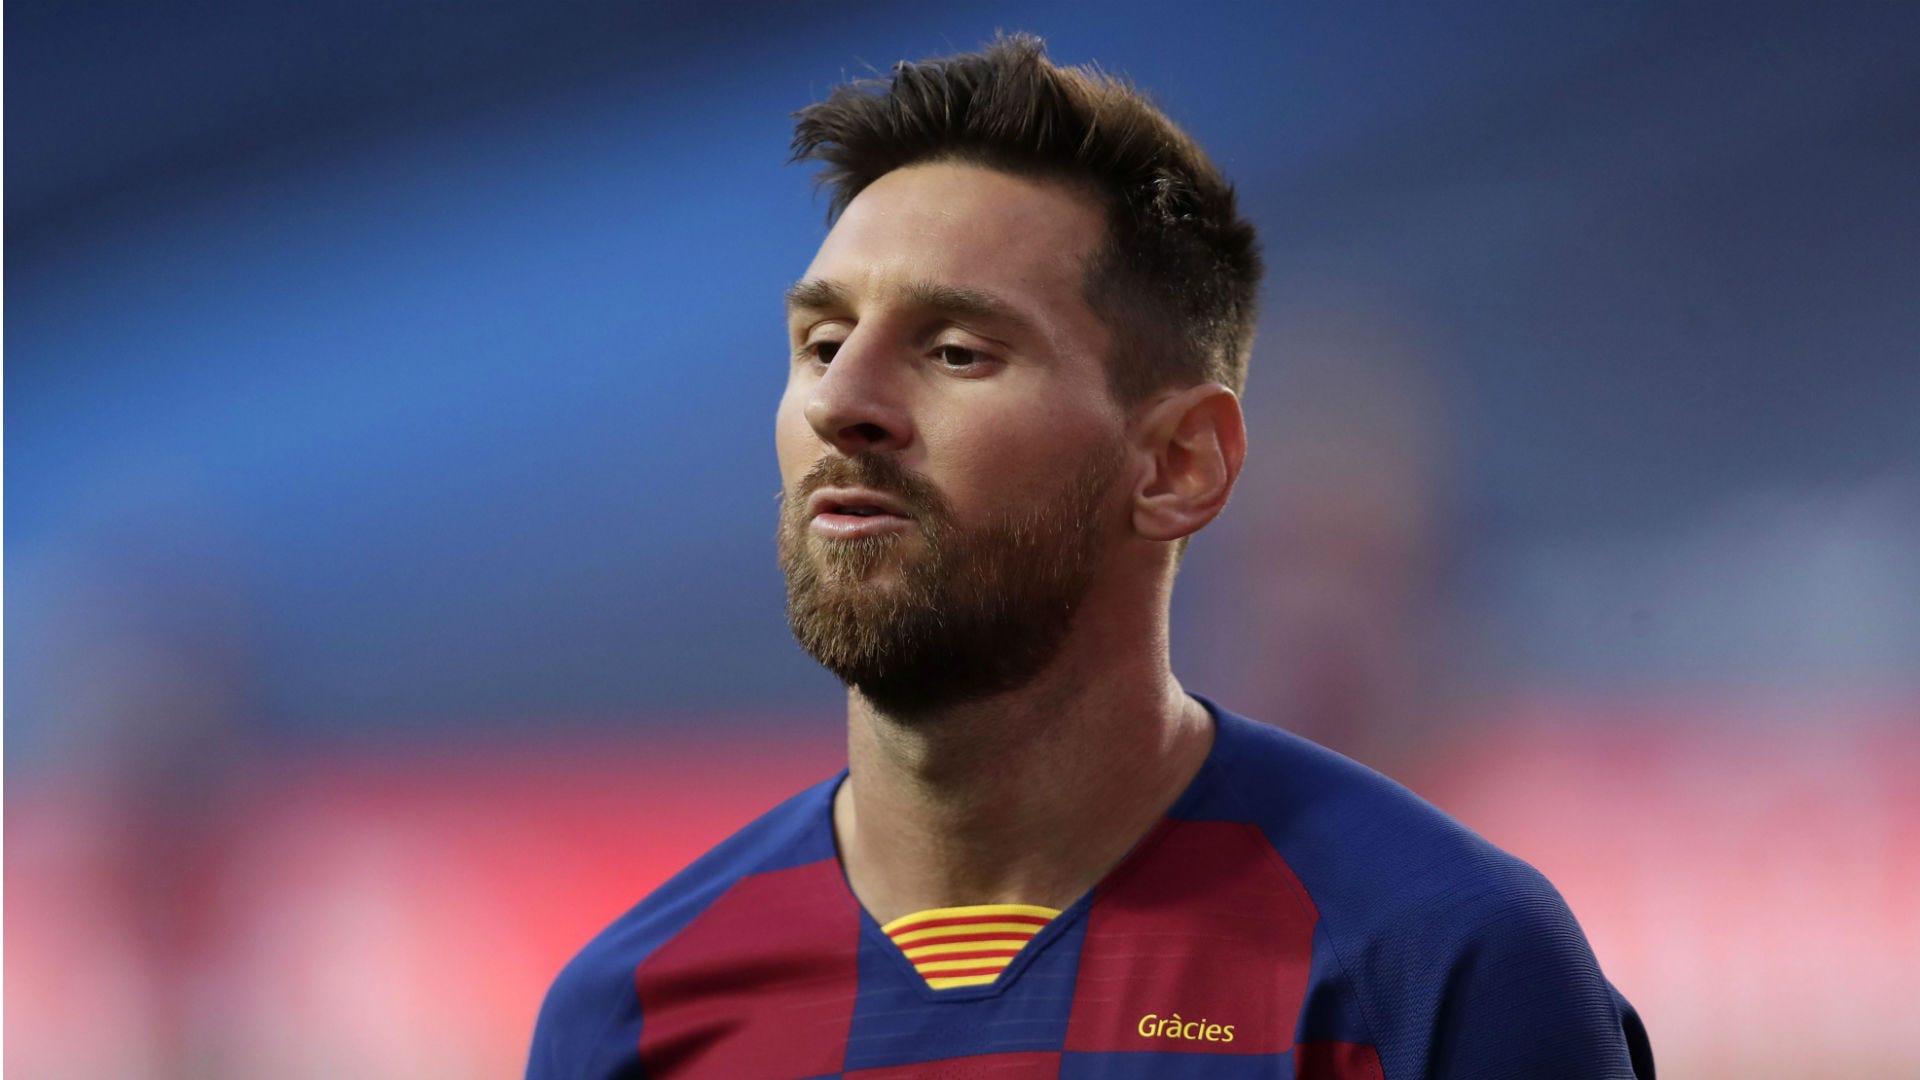 Tin đồn về việc Lionel Messi chuyển đến PSG đã khiến cả thế giới bất ngờ. Nếu bạn là một fan của Messi, hãy xem hình ảnh liên quan để hiểu rõ hơn về việc chuyển nhượng này, cũng như những khả năng mà Barca và PSG có thể mang lại cho siêu sao người Argentina.